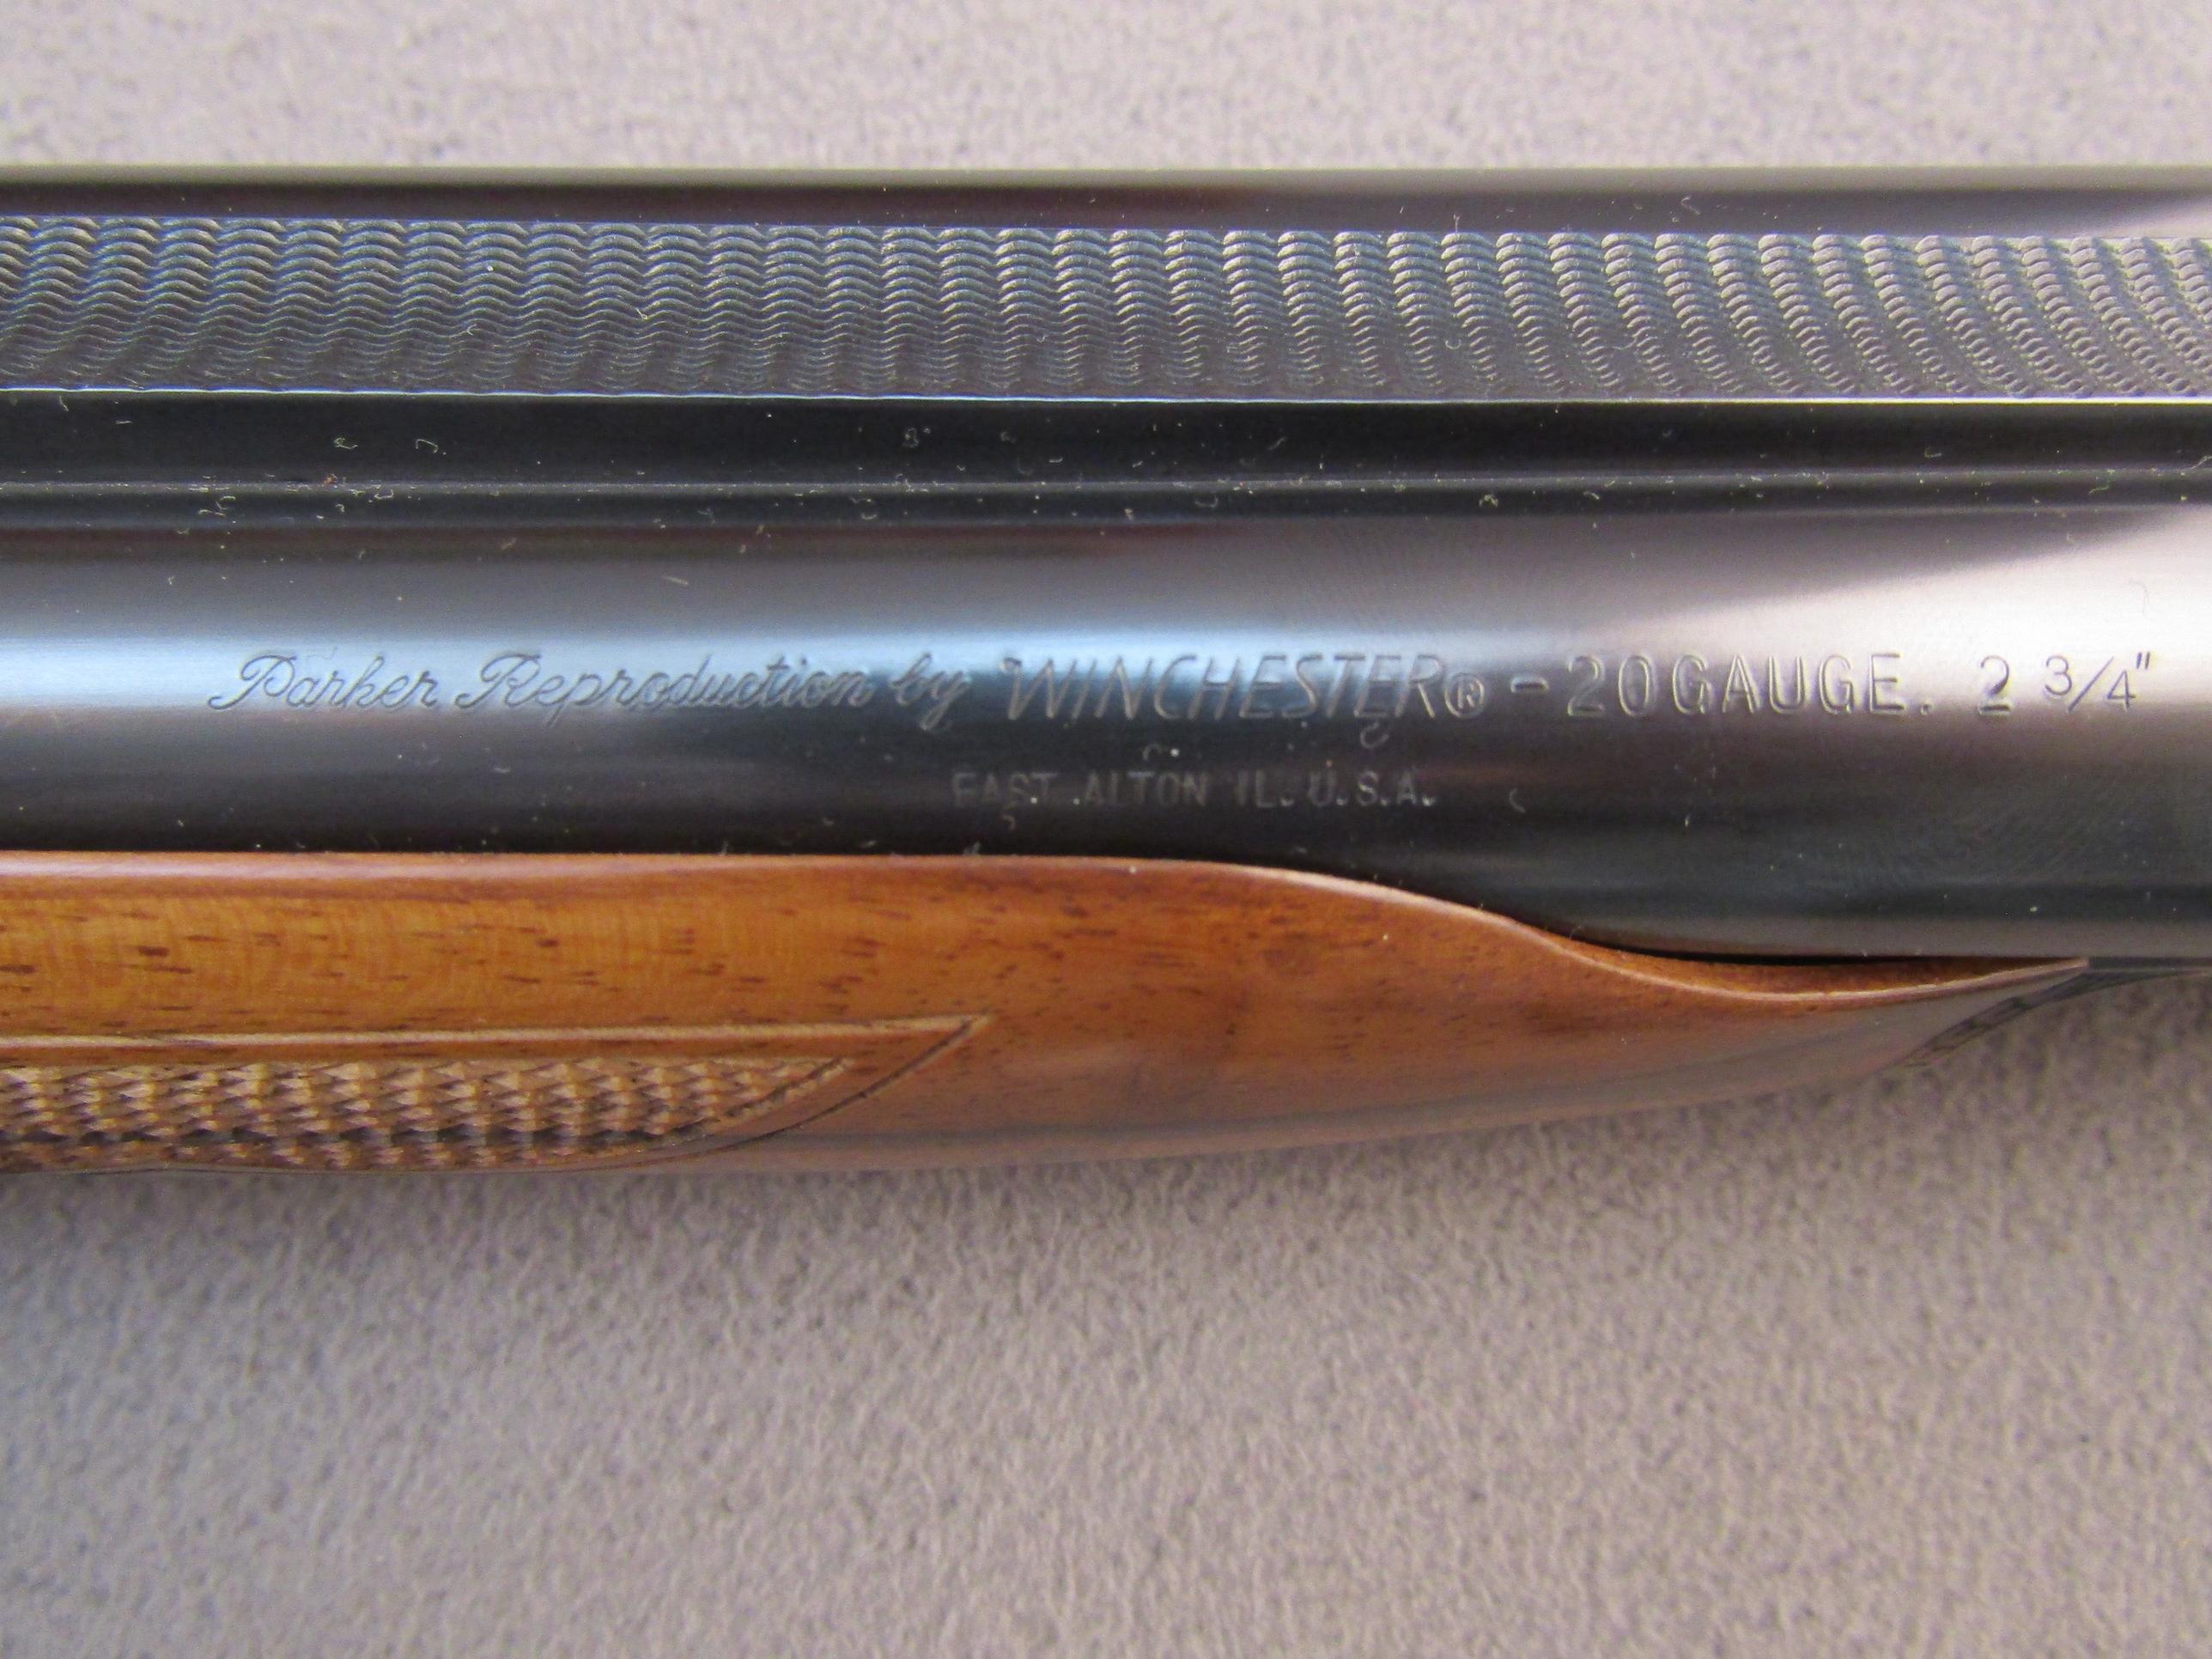 PARKER REPRODUCTION Model SxS, Breech-Action Shotgun, 20g, S#20-04828